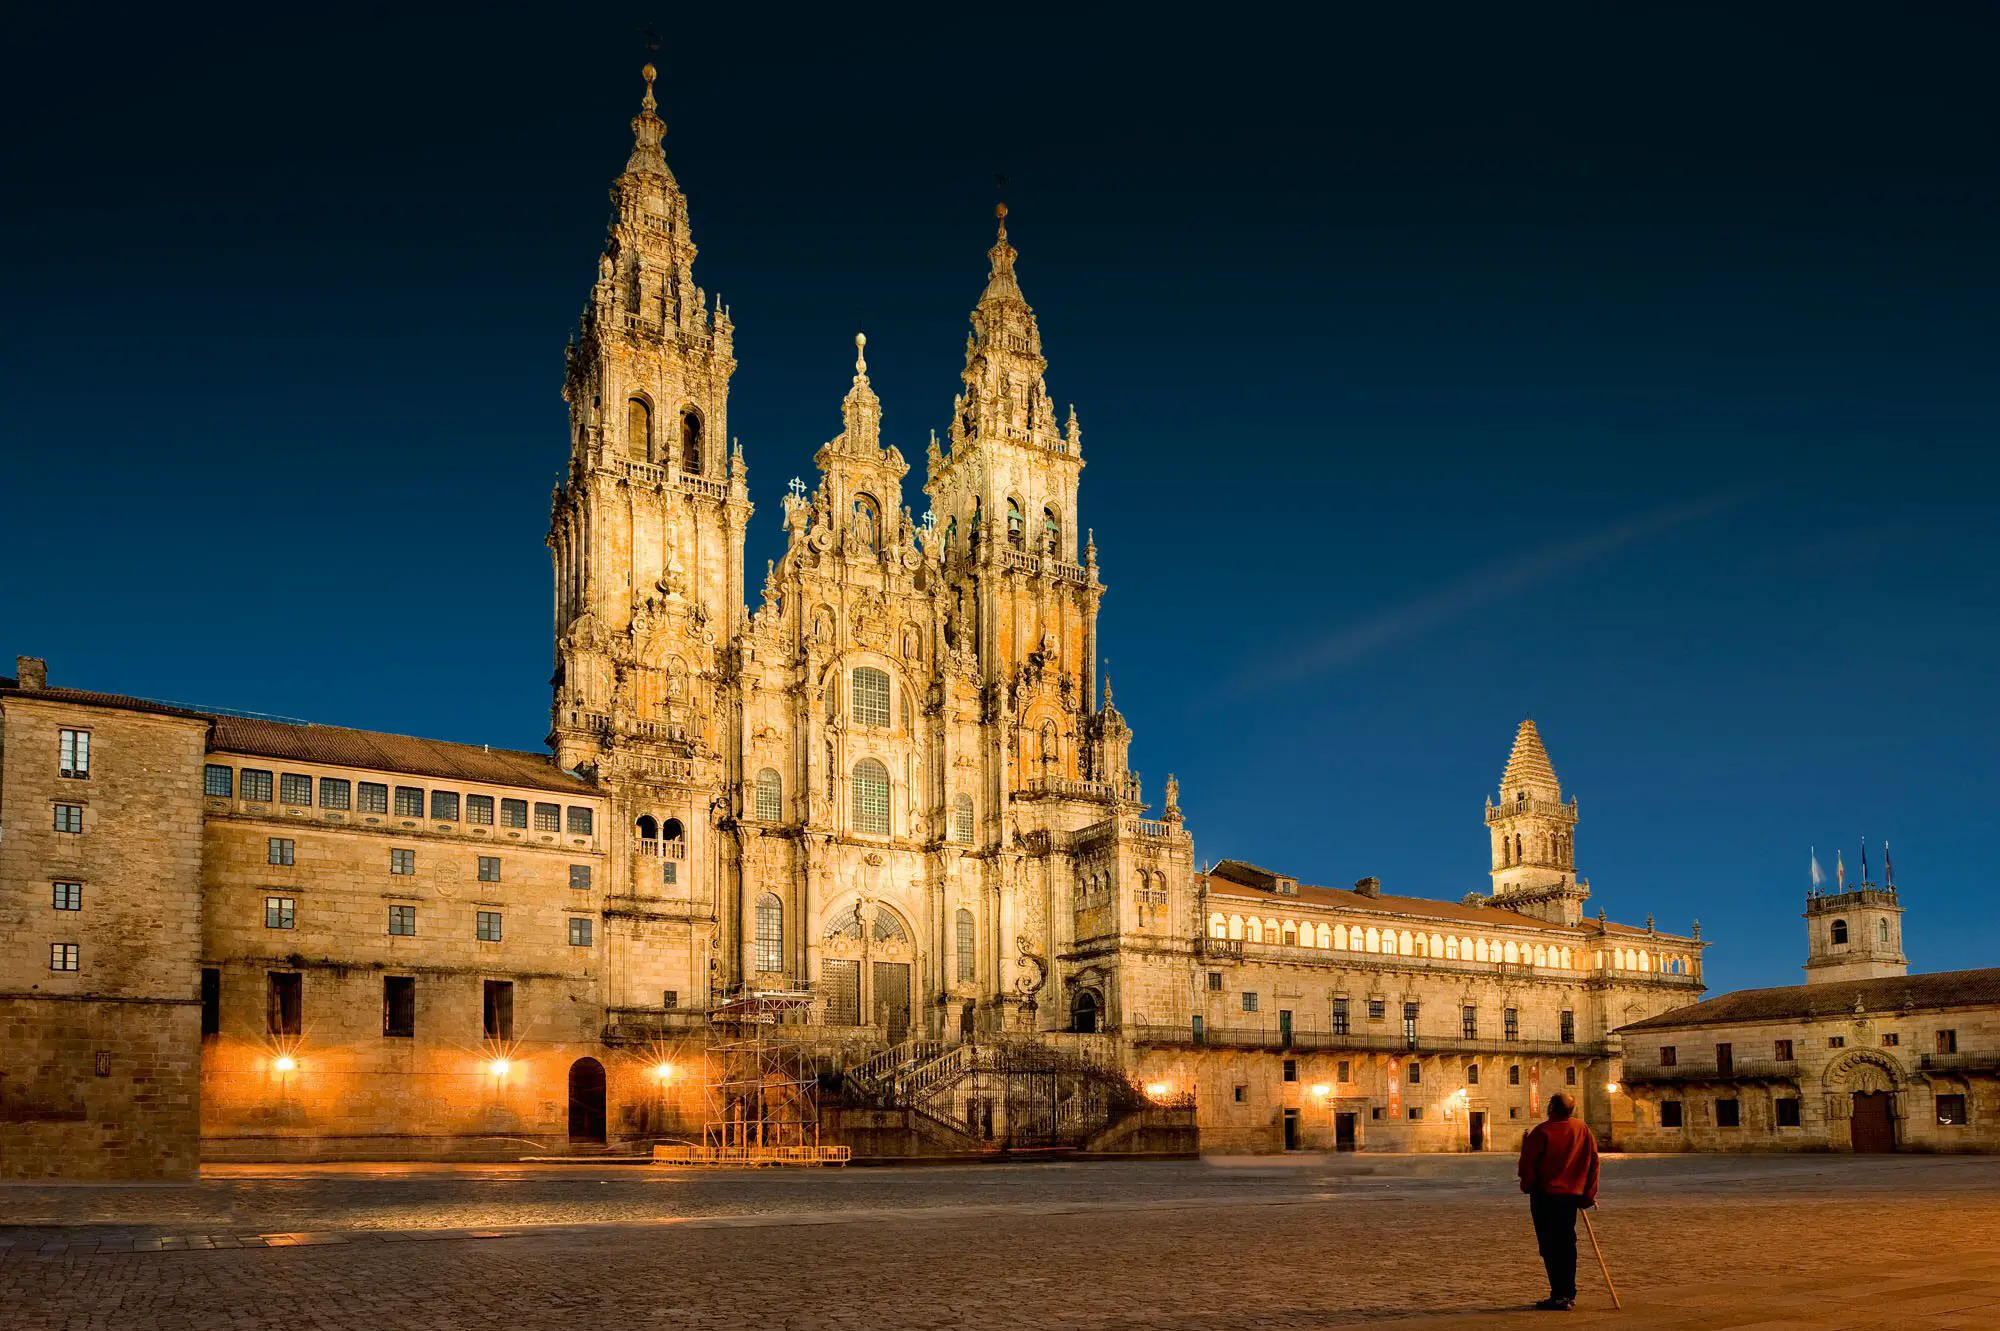 Santiago de Compostela. De peste 1.000 de ani pelerinii ajung in Spania